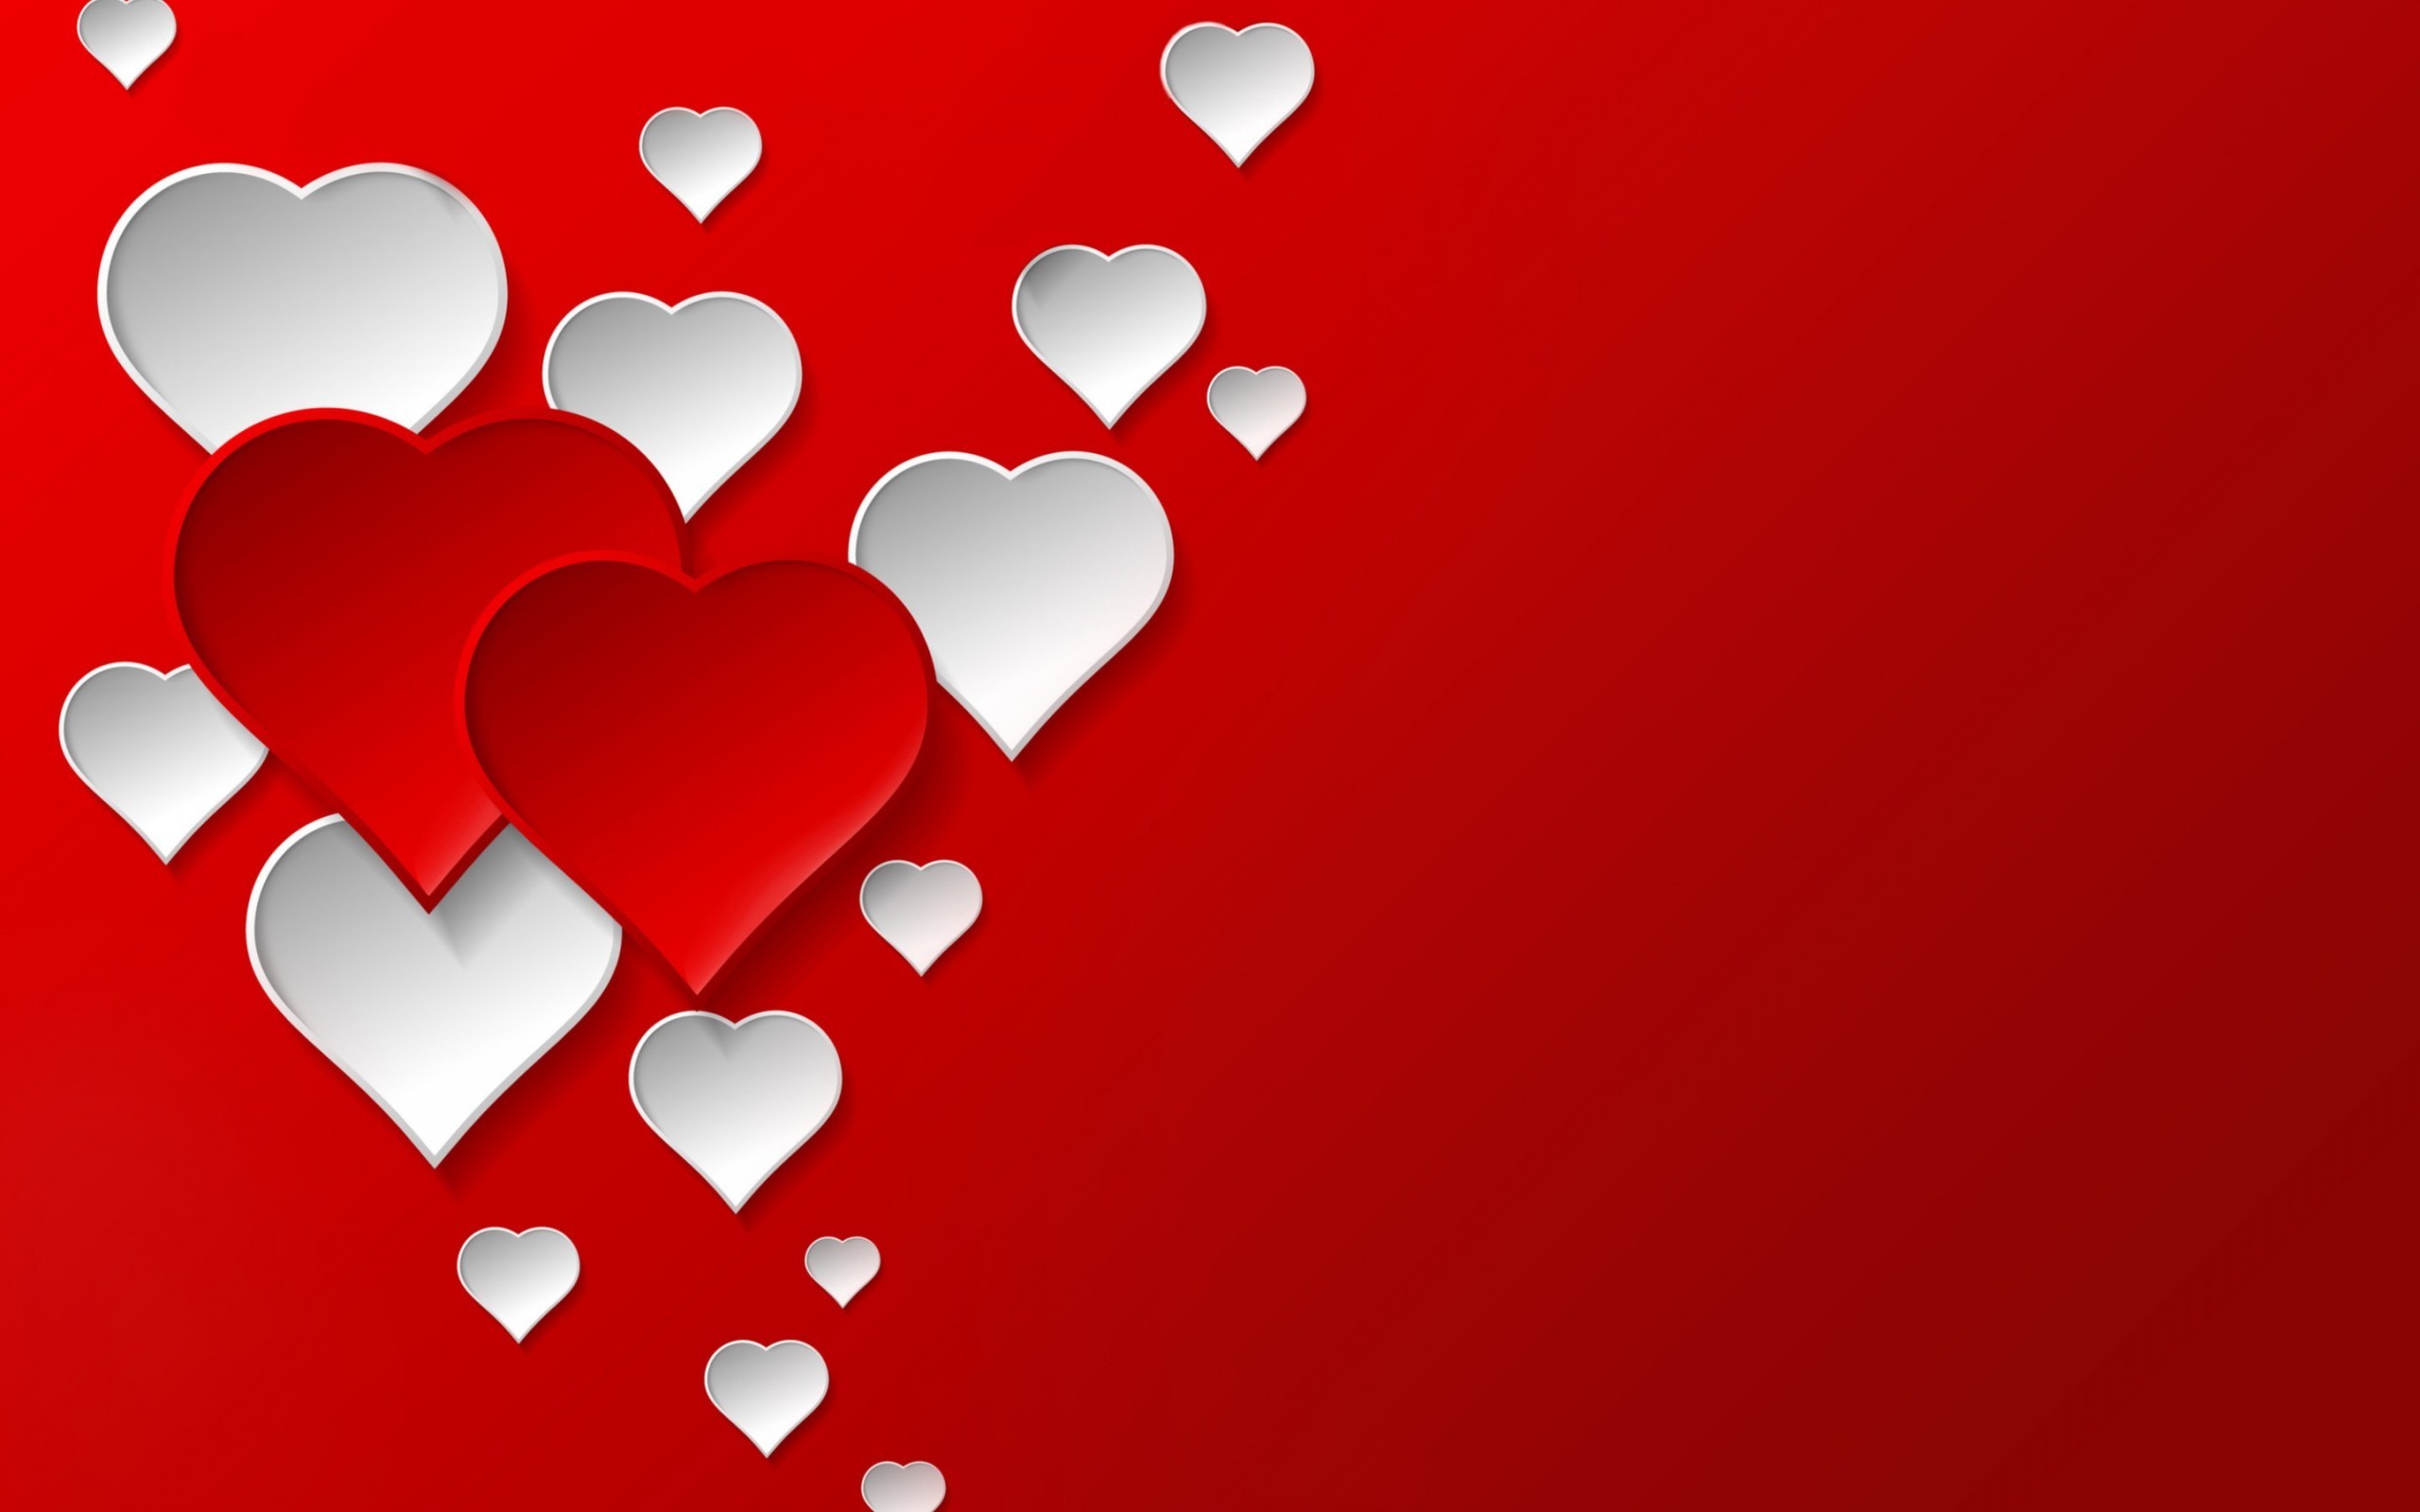 Trái tim đỏ là biểu tượng của tình yêu vĩnh cửu. Hãy đến với hình ảnh của chúng tôi với những red heart backgrounds tuyệt đẹp, để bạn có được những trải nghiệm tuyệt vời nhất trong ngày của tình yêu.